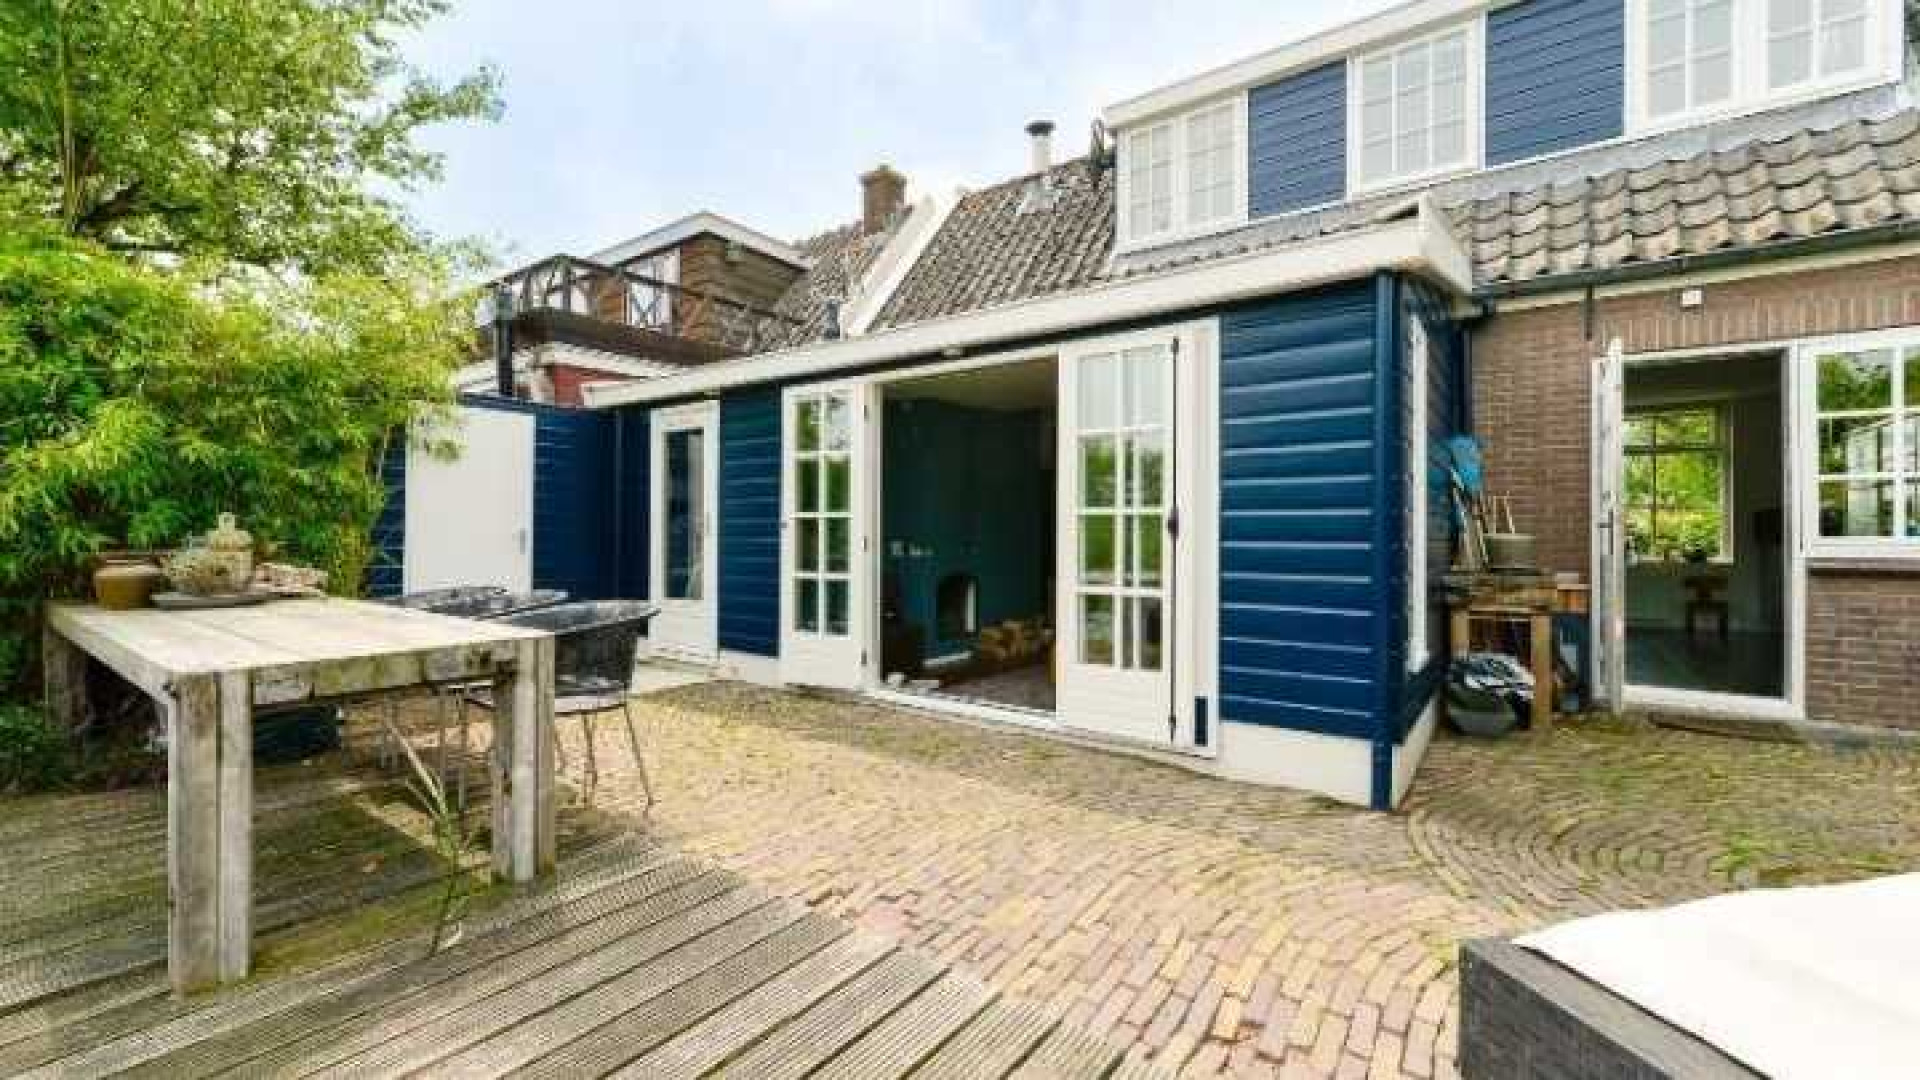 Floortje Dessing verkoopt haar huis op de vraagprijs. Zie foto's